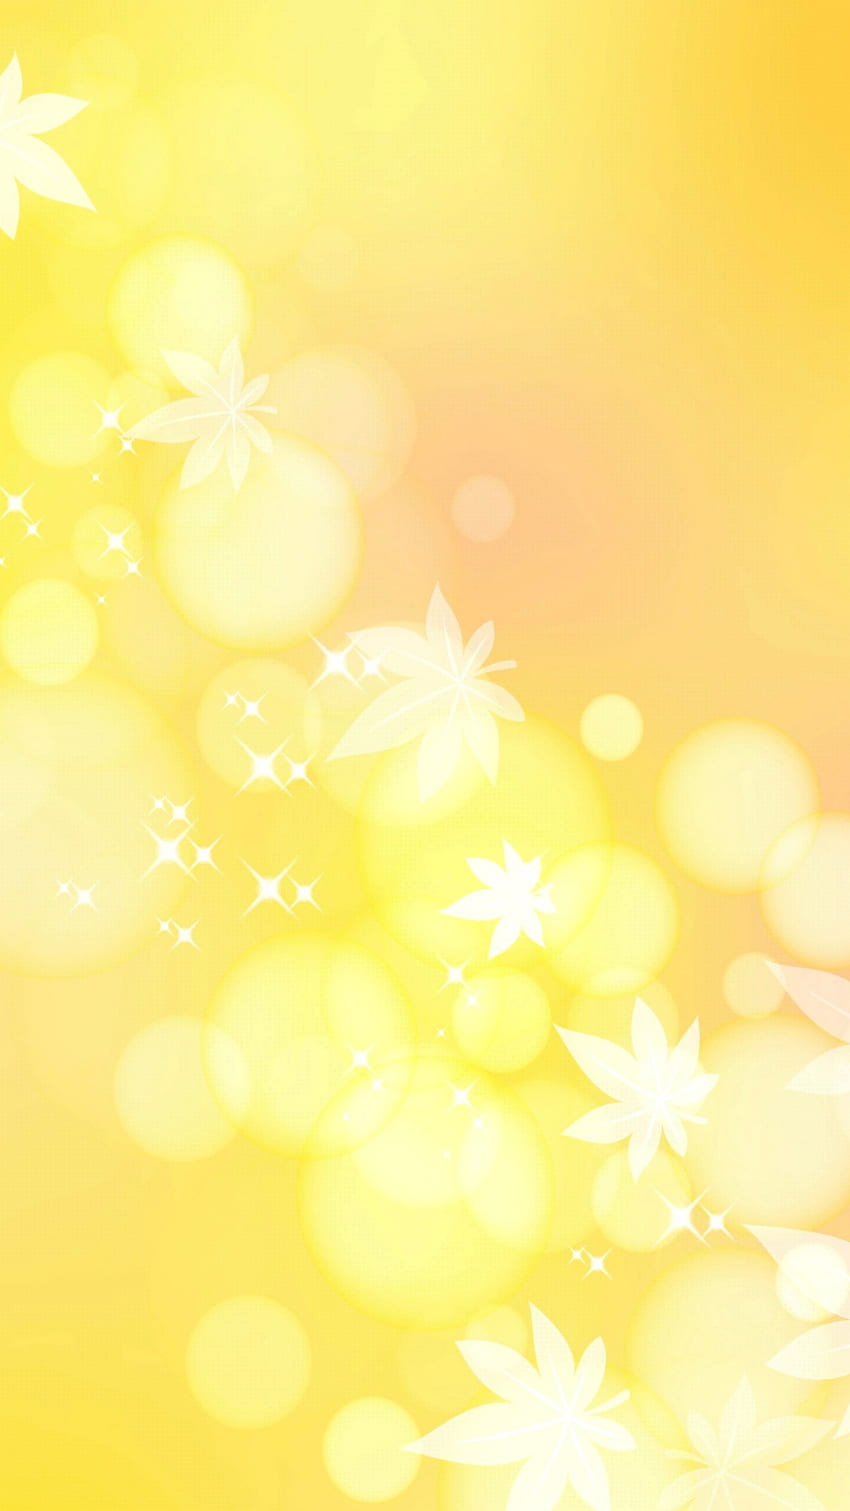 Hình nền vàng là một lựa chọn tuyệt vời cho ai muốn trang trí máy tính hoặc điện thoại của mình. Hình ảnh tươi sáng, lấp lánh và rực rỡ của những hạt vàng sẽ tạo nên một không gian tràn đầy năng lượng và may mắn. Cùng khám phá bộ sưu tập hình nền vàng để thể hiện phong cách của bạn. 